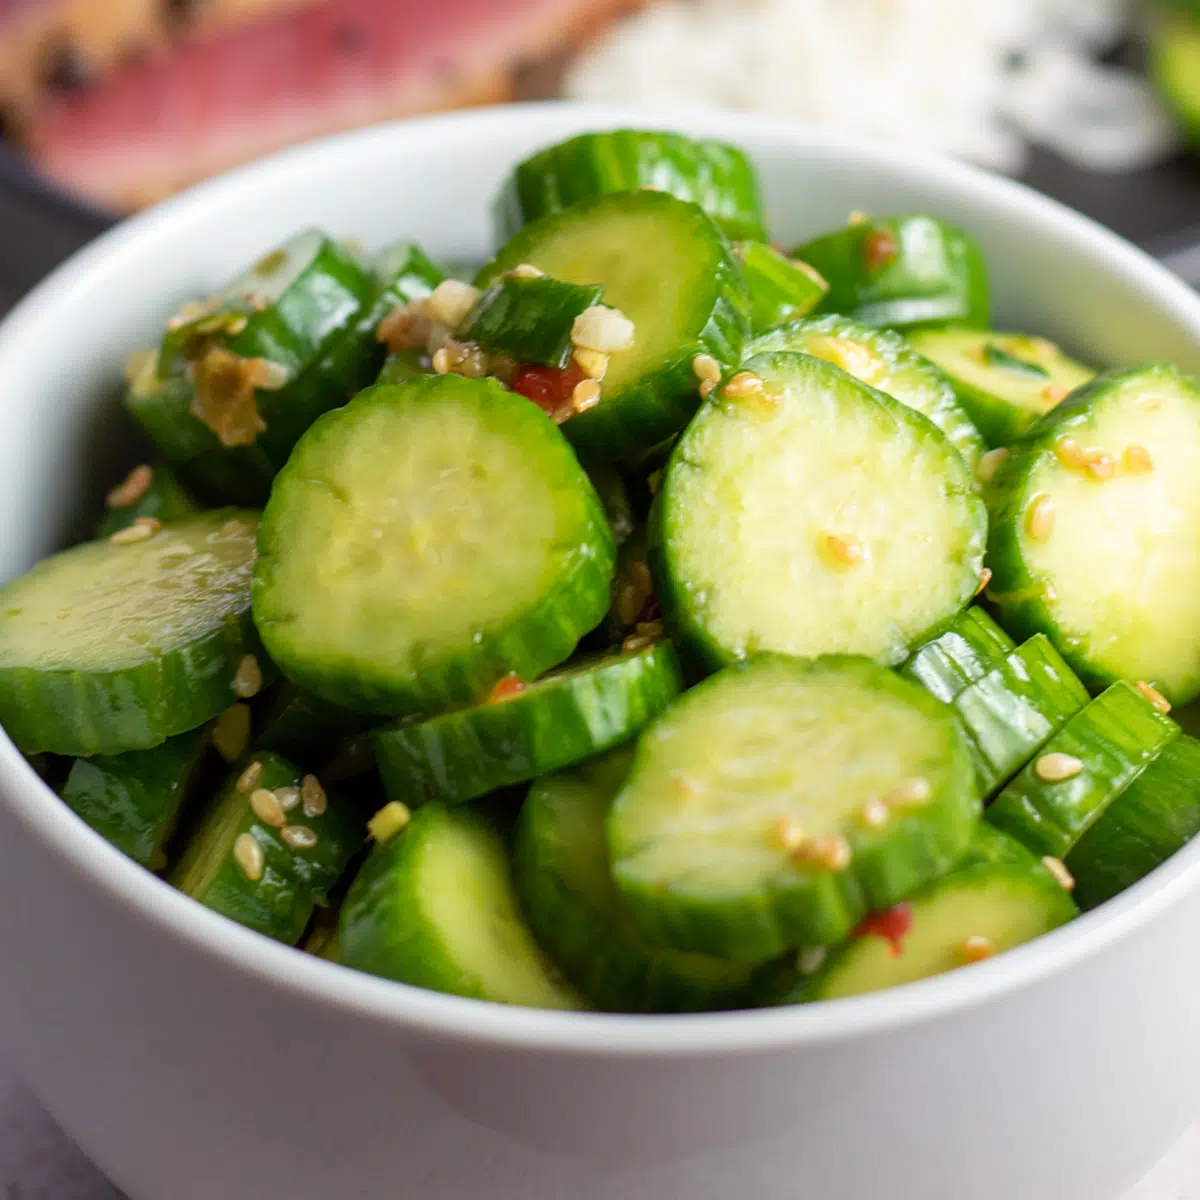 La migliore insalata di cetrioli asiatici condita con salsa di soia piccante, miele e condimento allo zenzero.